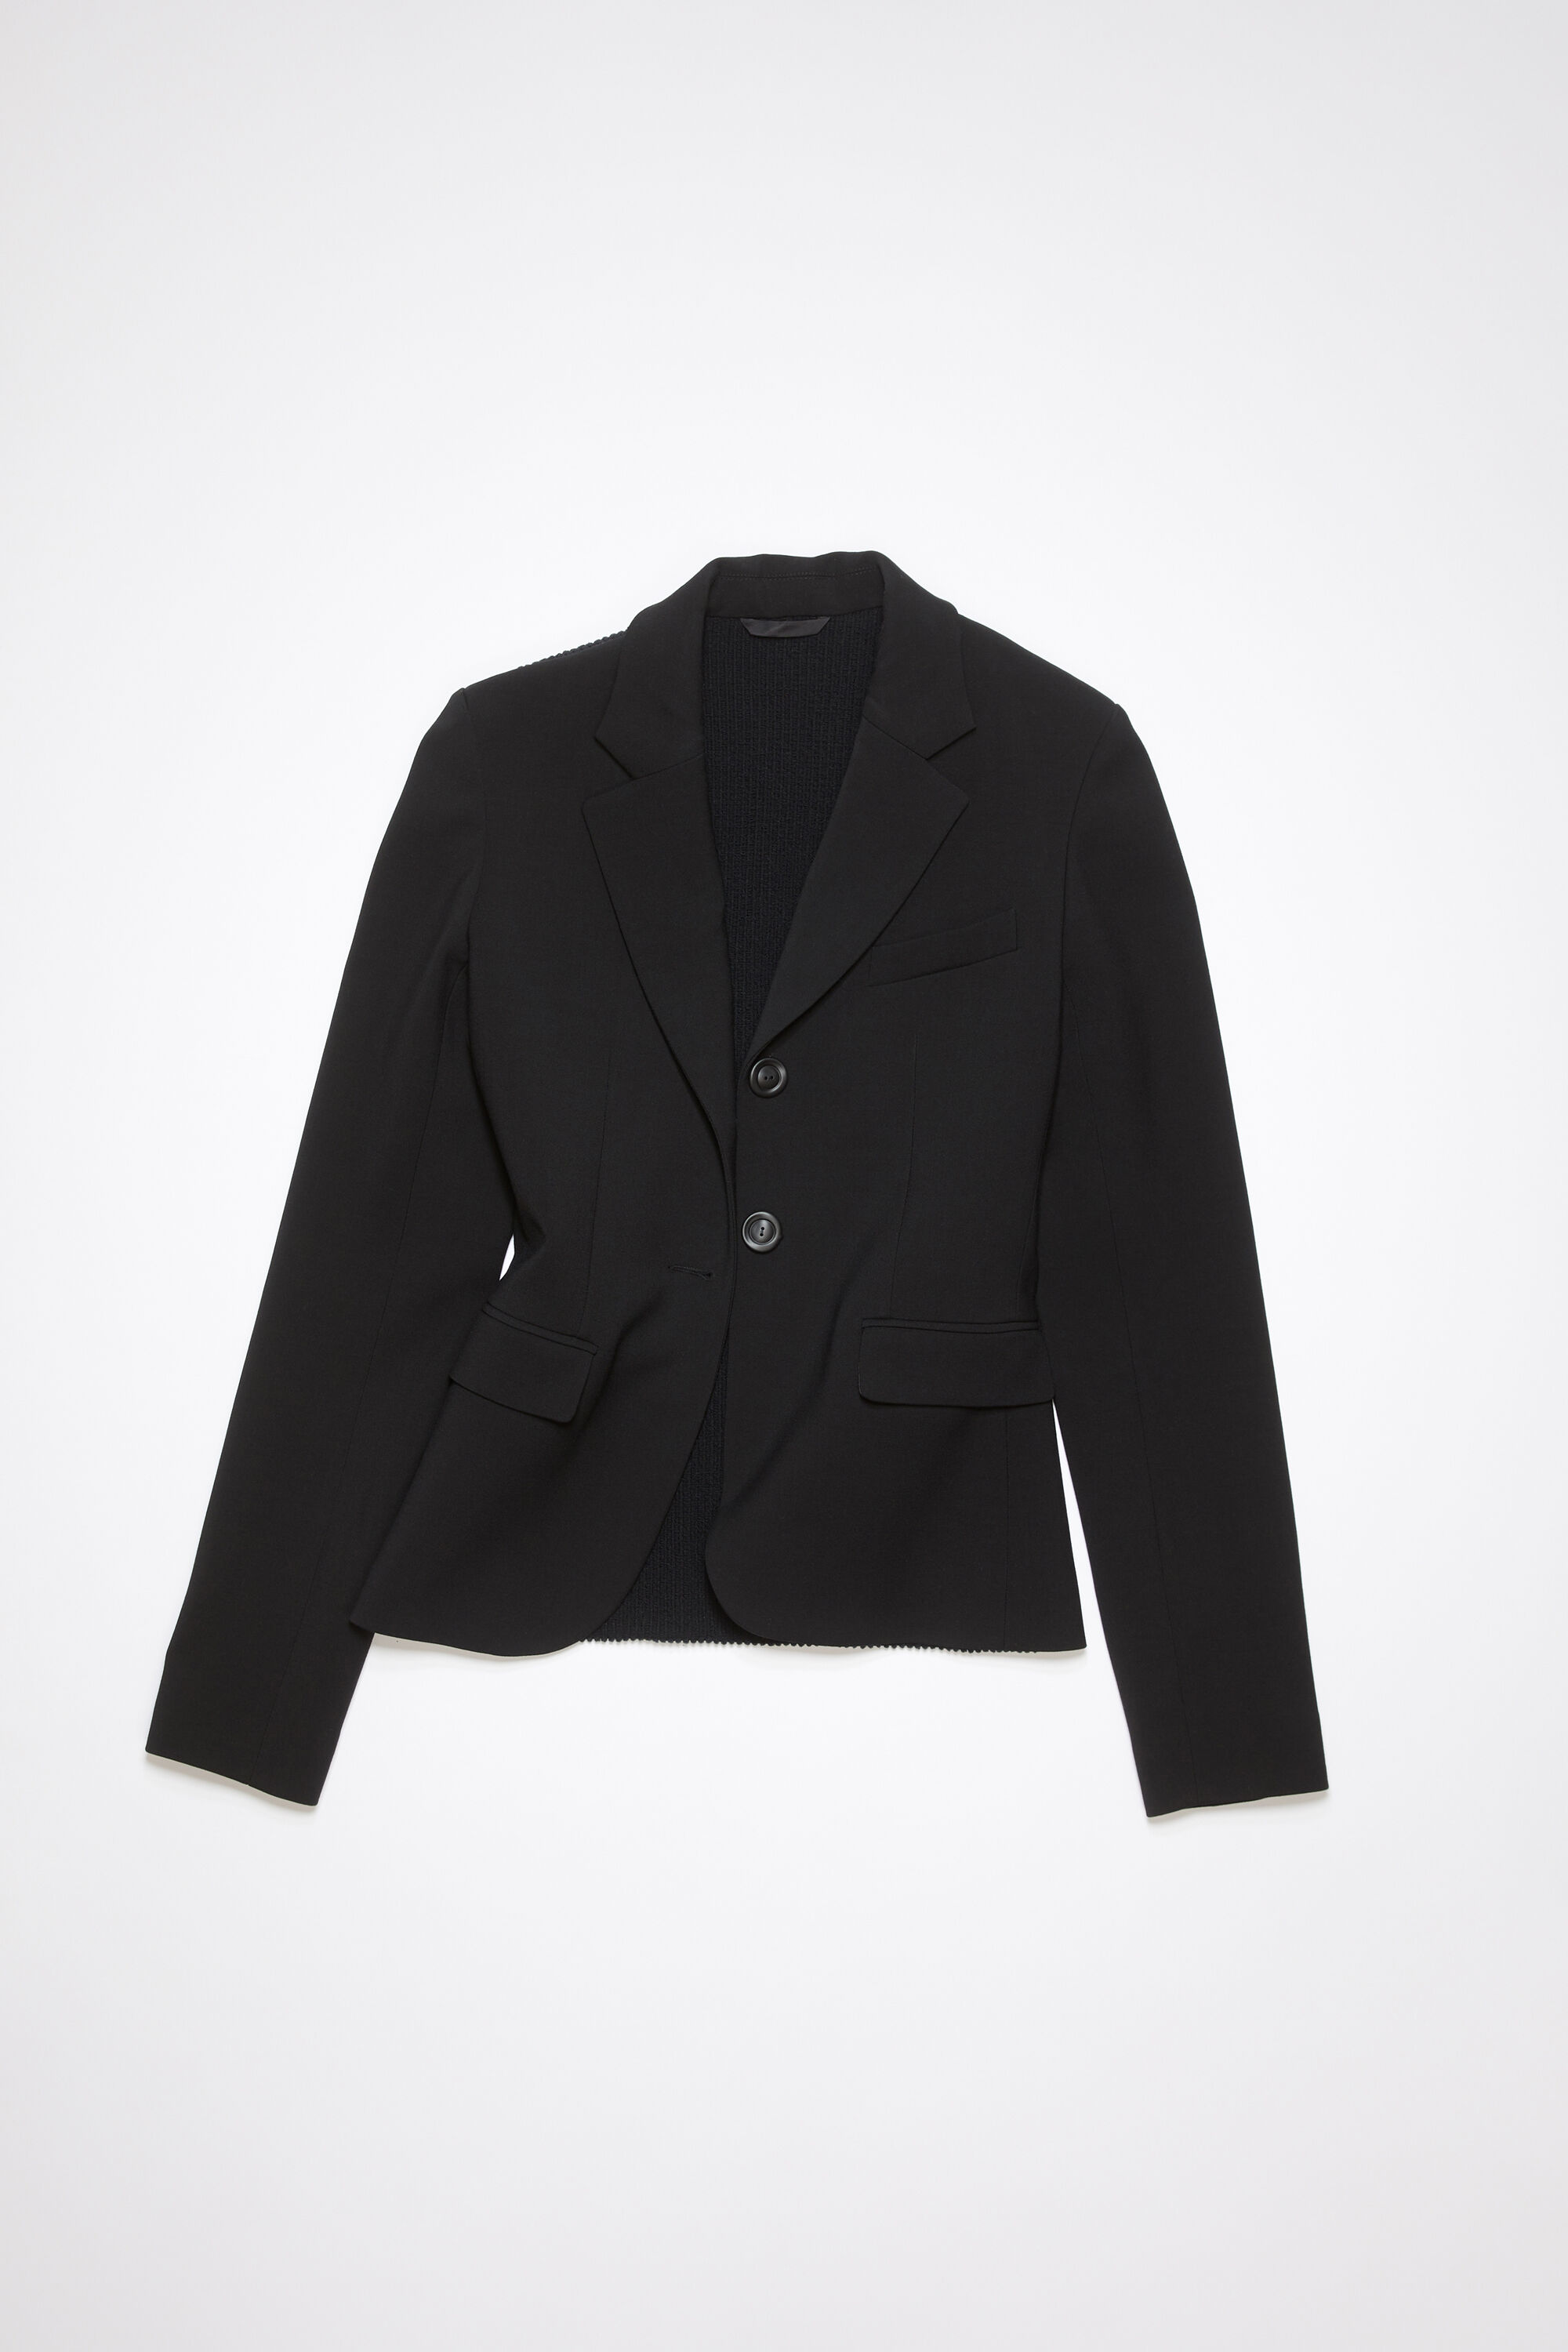 【未使用級品】Acne Studios シングルブレスト スーツジャケット 黒肩幅45cm